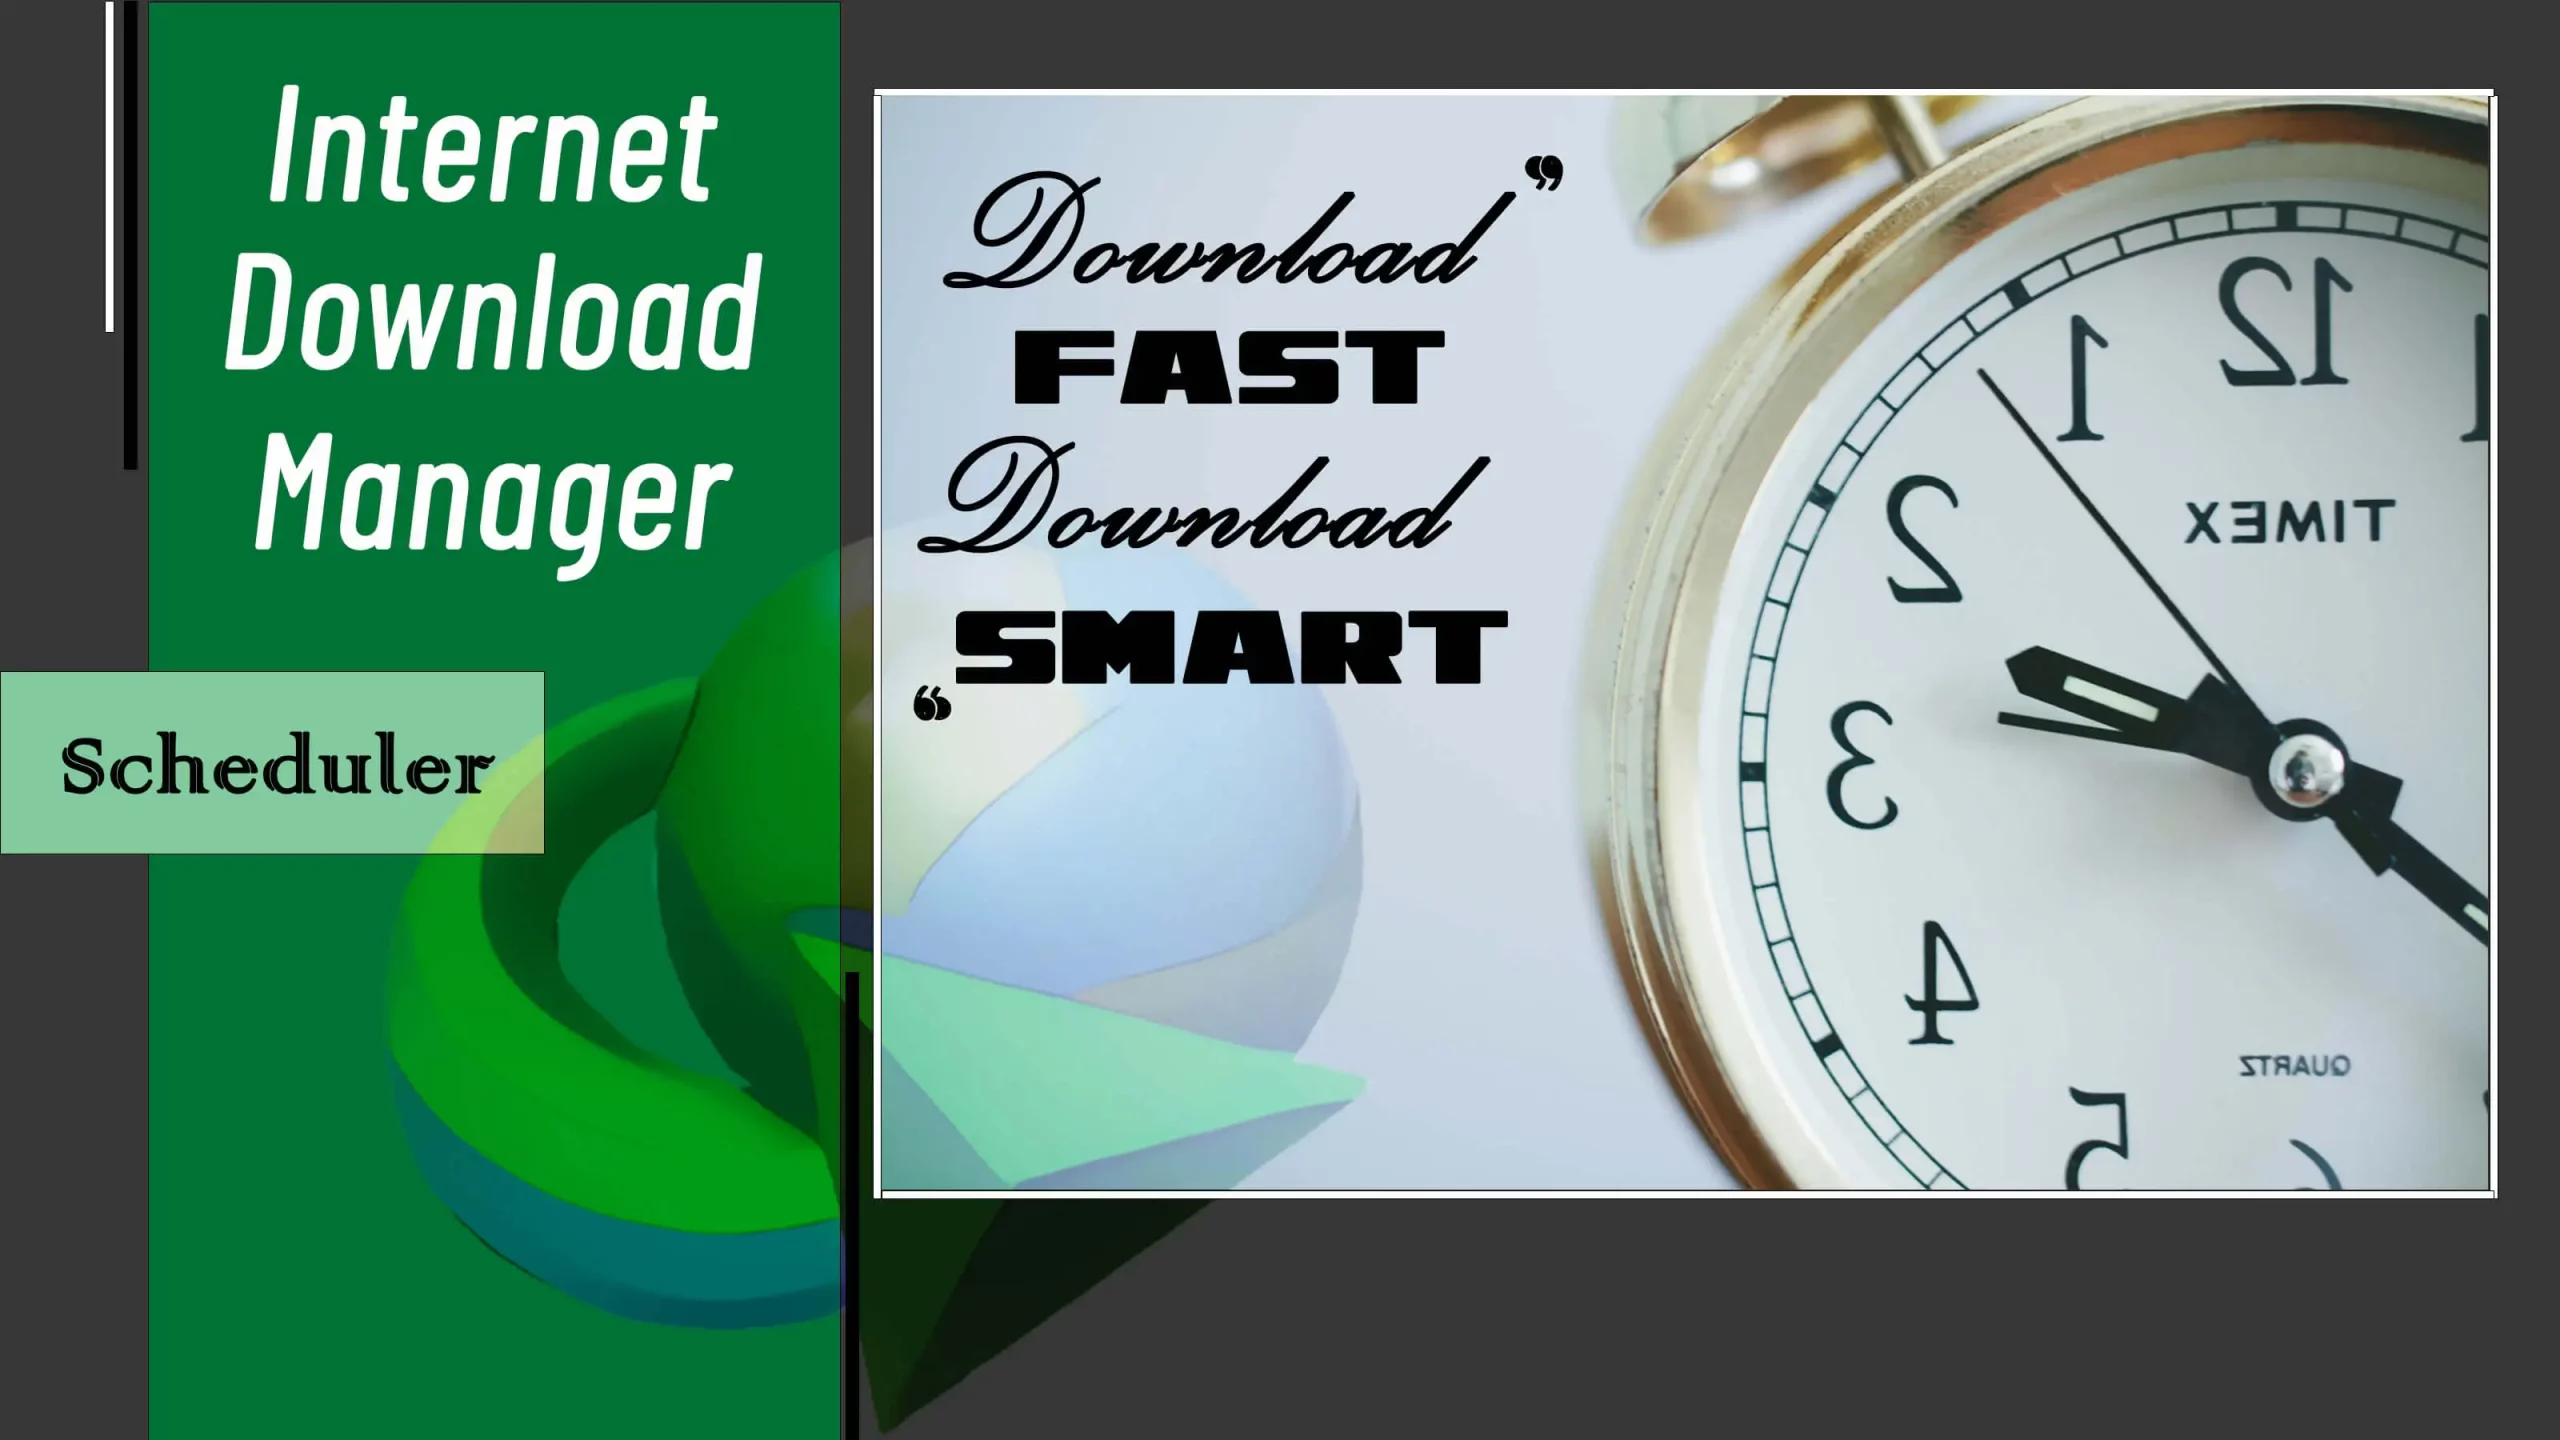 Internet Download Manager Scheduler: Download Fast, Download Smart!